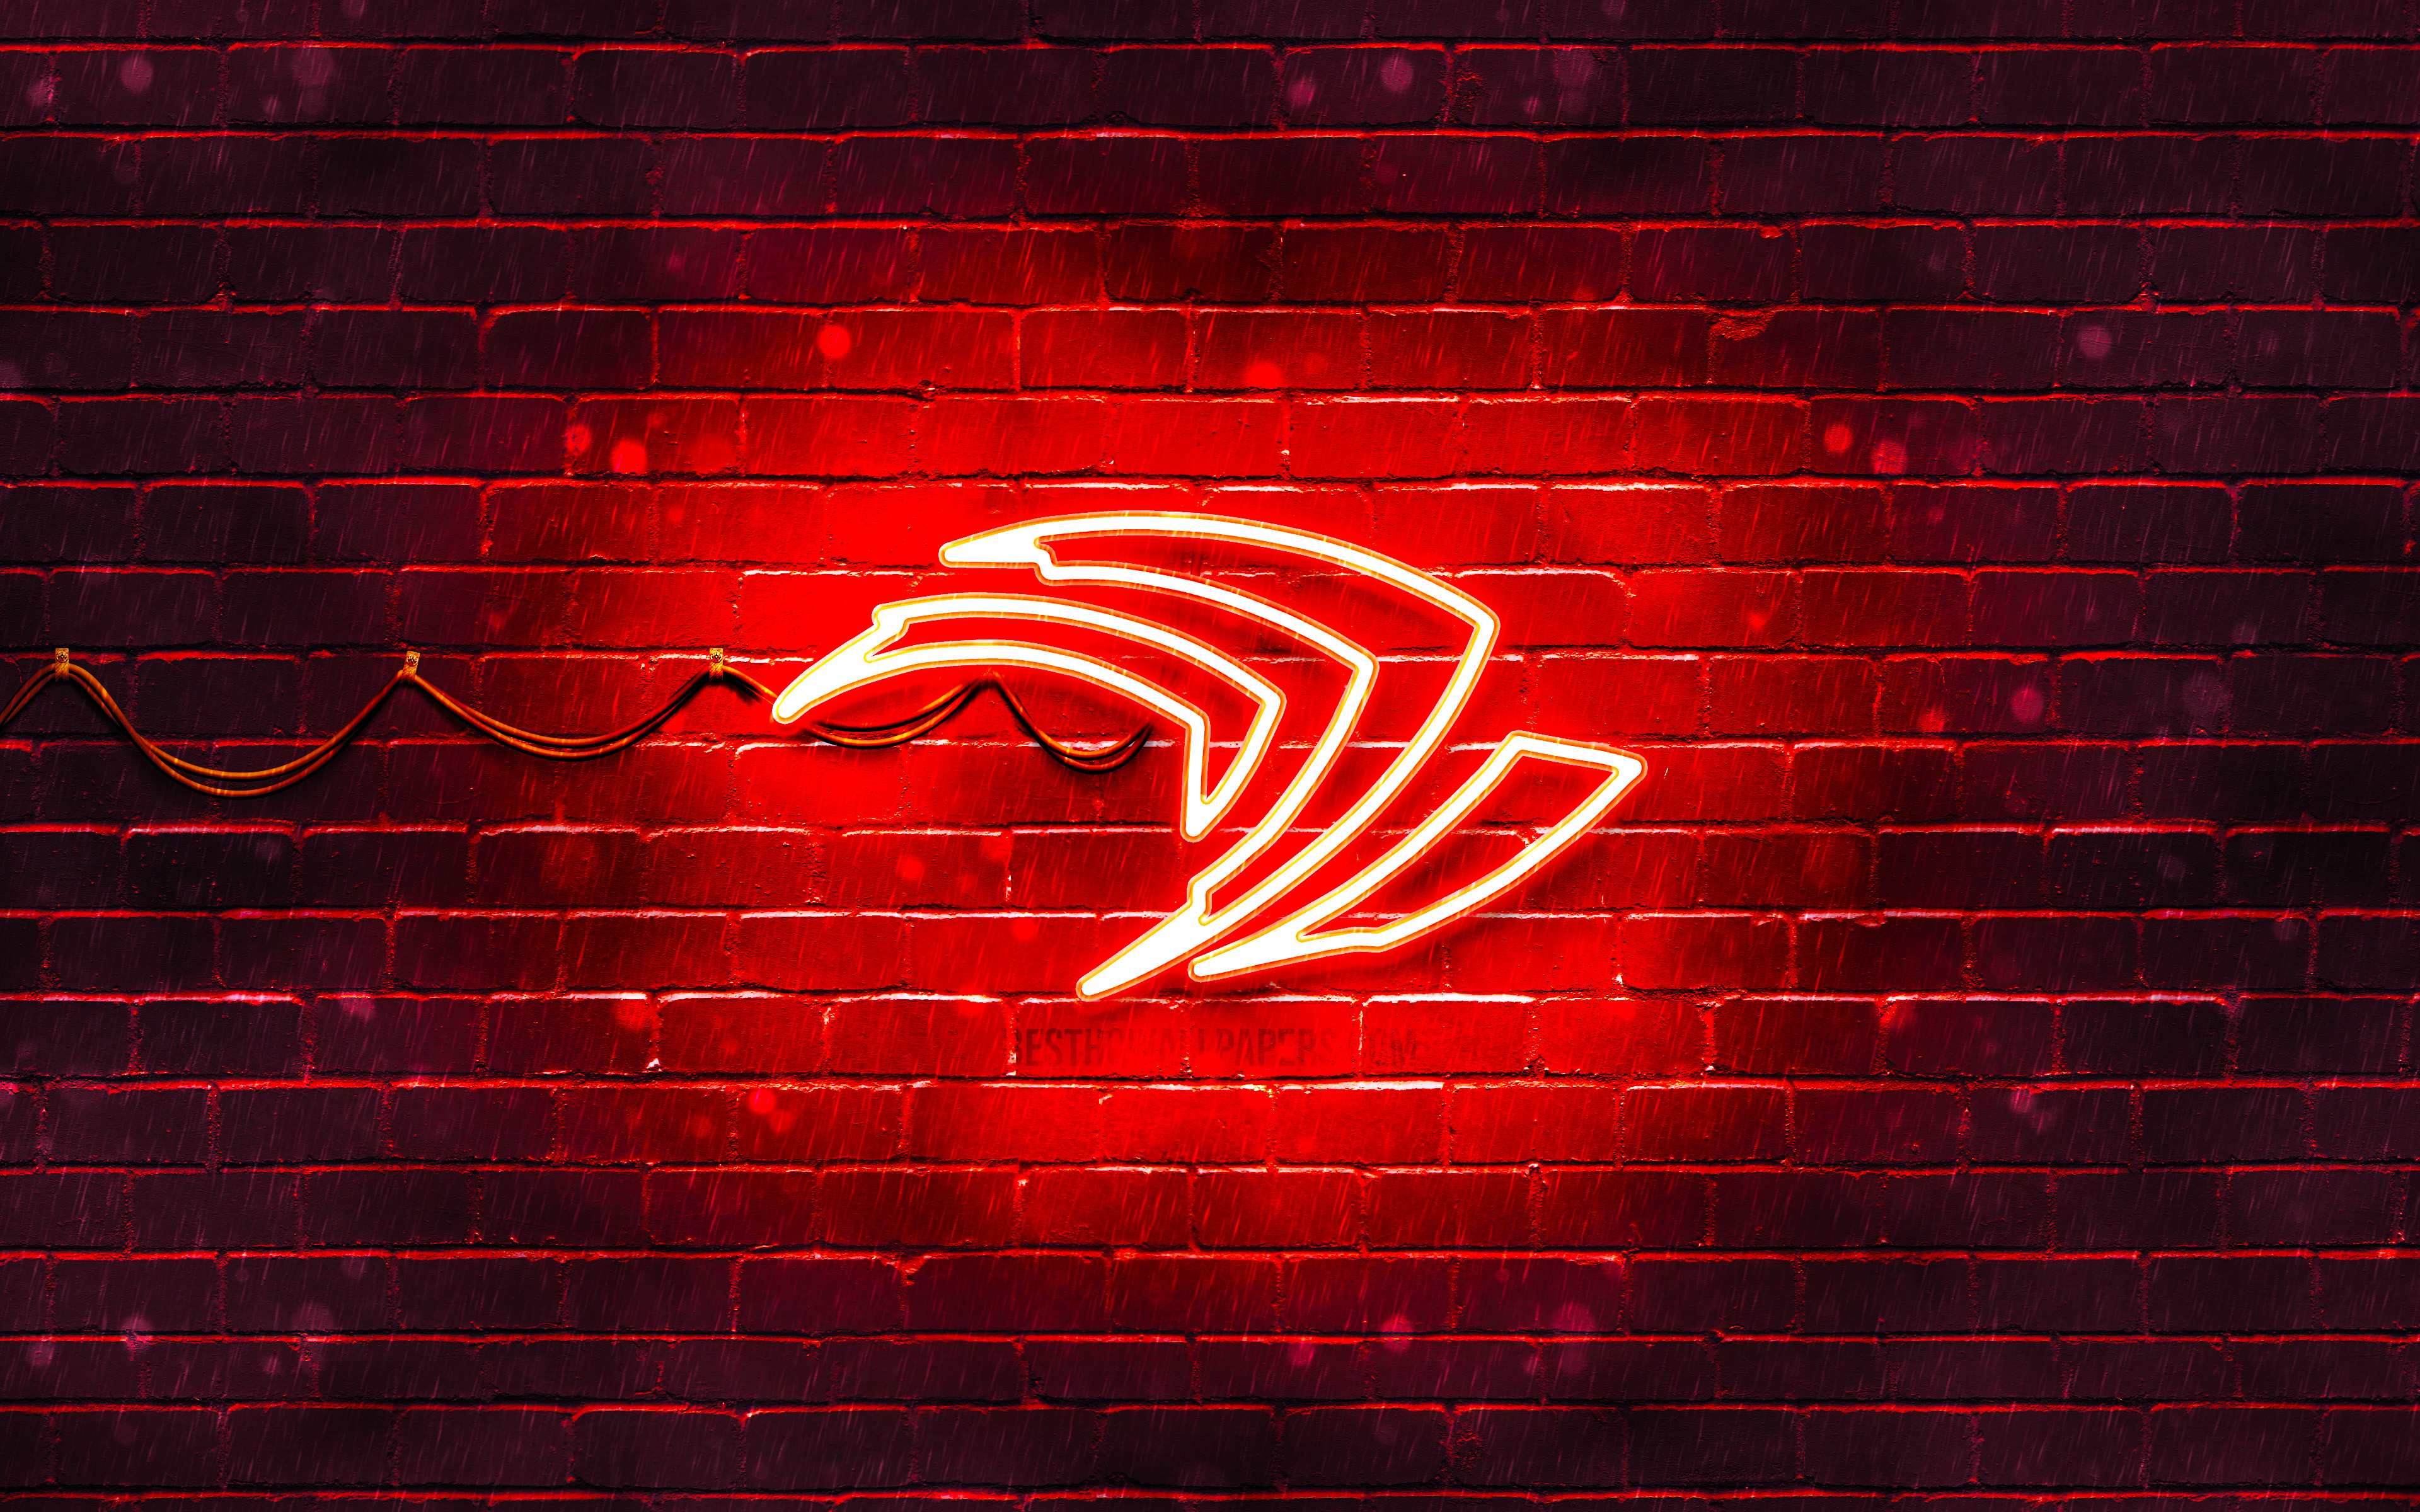 Nvidia Red Logo, 4k, Red Brickwall, Nvidia Logo, Brands, - Red Neon Wallpaper 4k - HD Wallpaper 